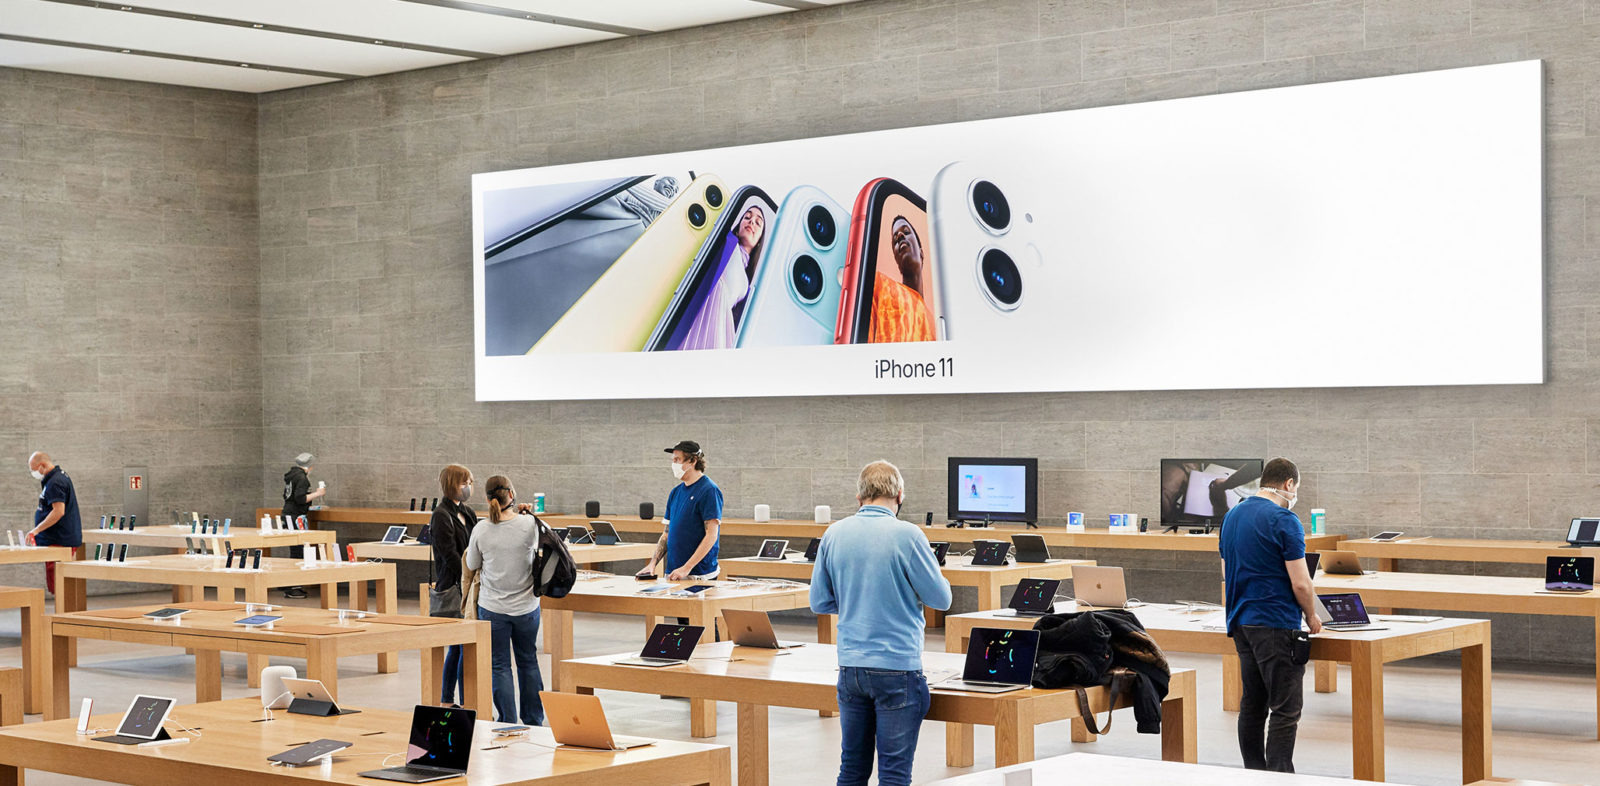 Le misure adottate da Apple per la riapertura degli Apple Store